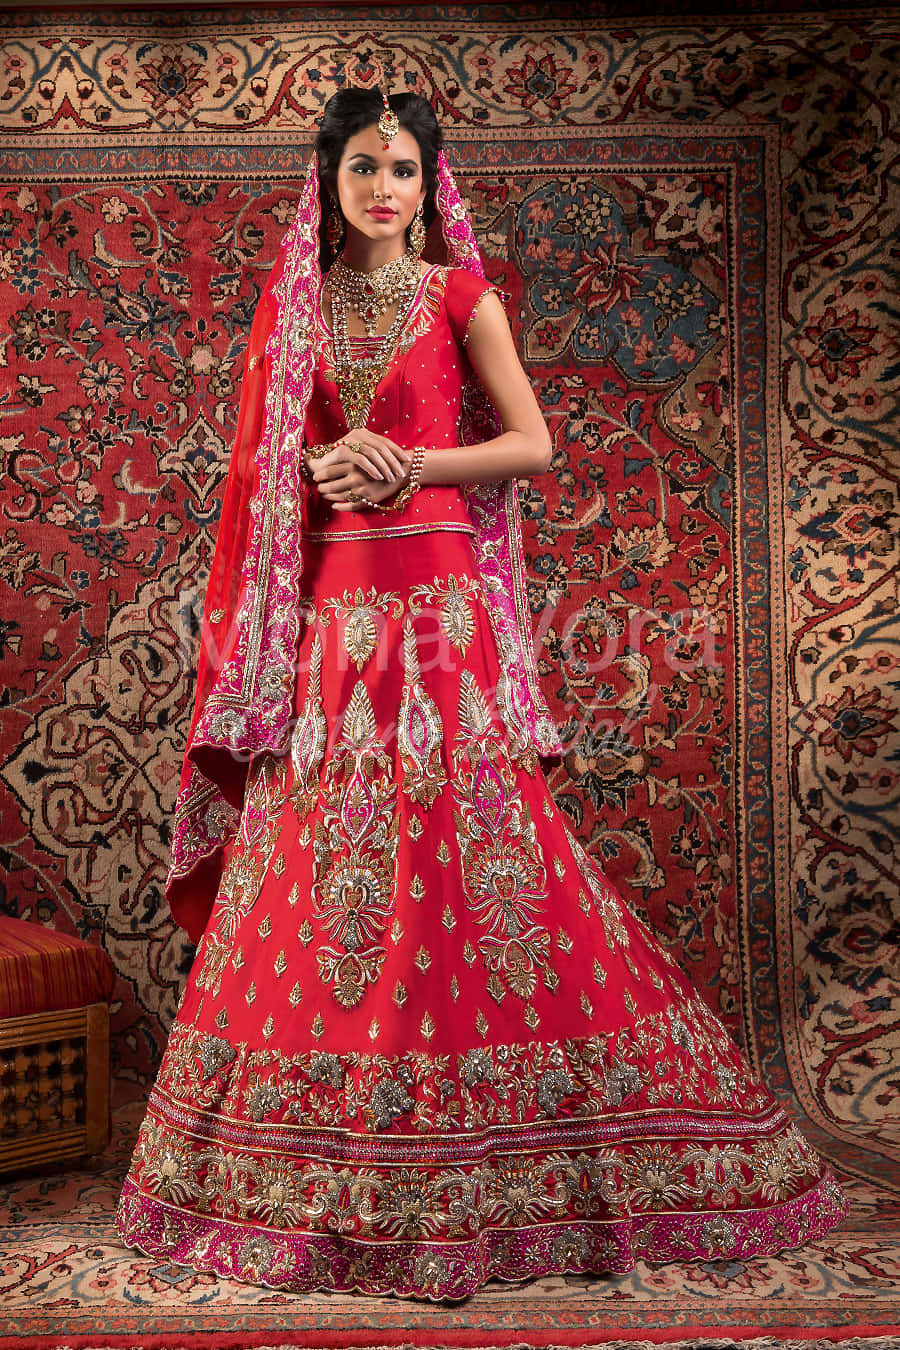 Elegantly Adorned Indian Bride